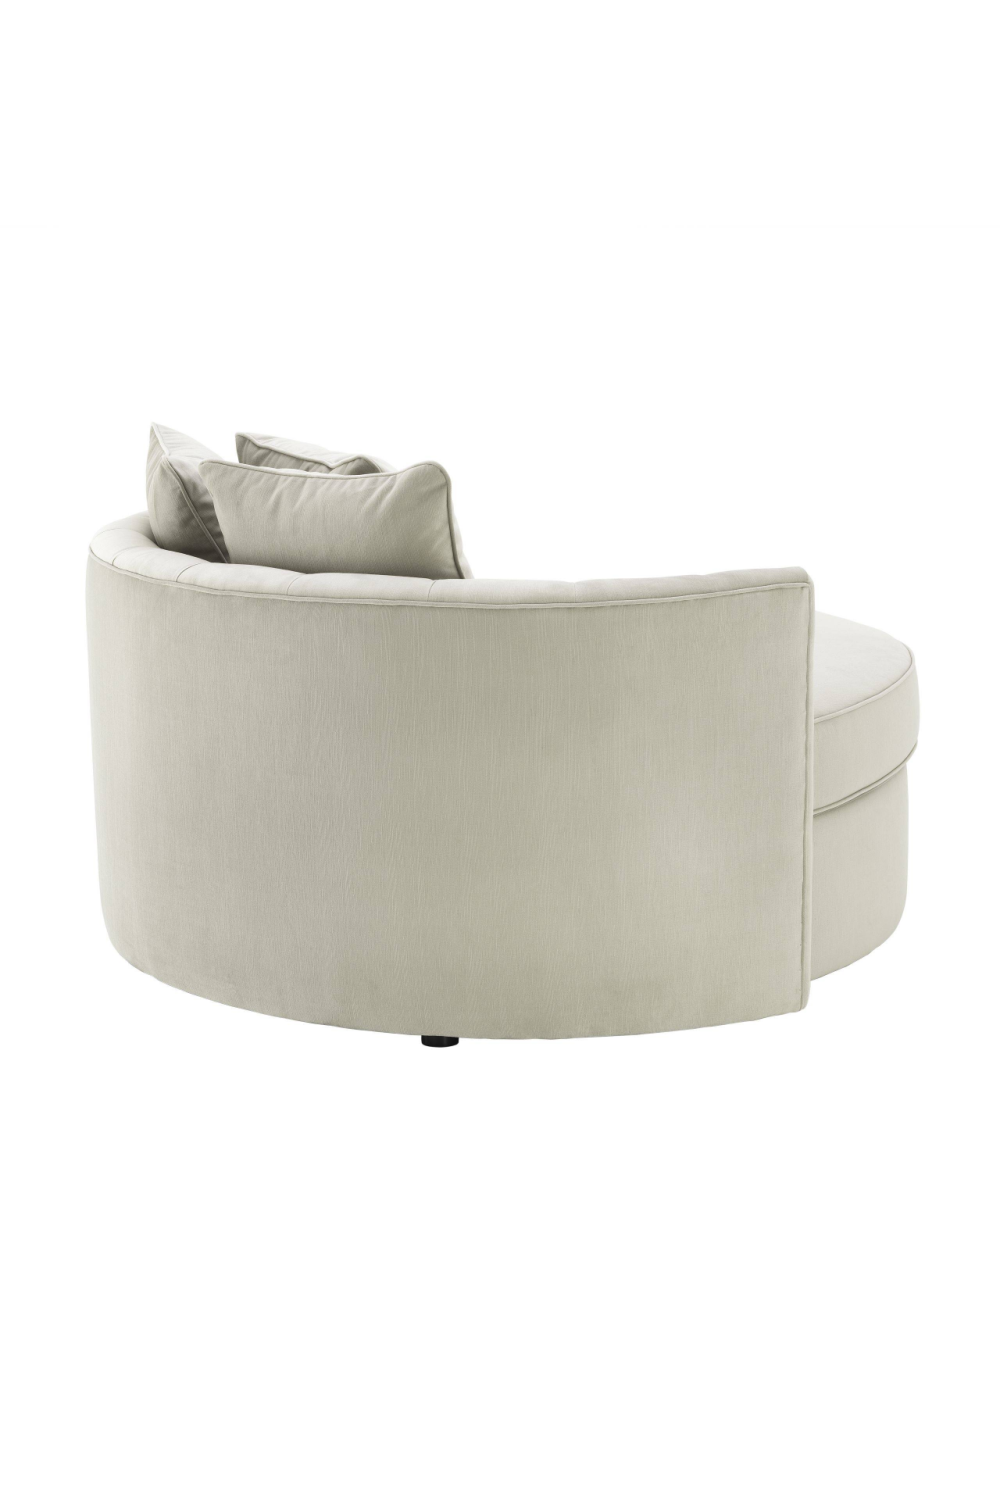 Round Gray Buttoned Sofa | Eichholtz Carlita | Oroa.com